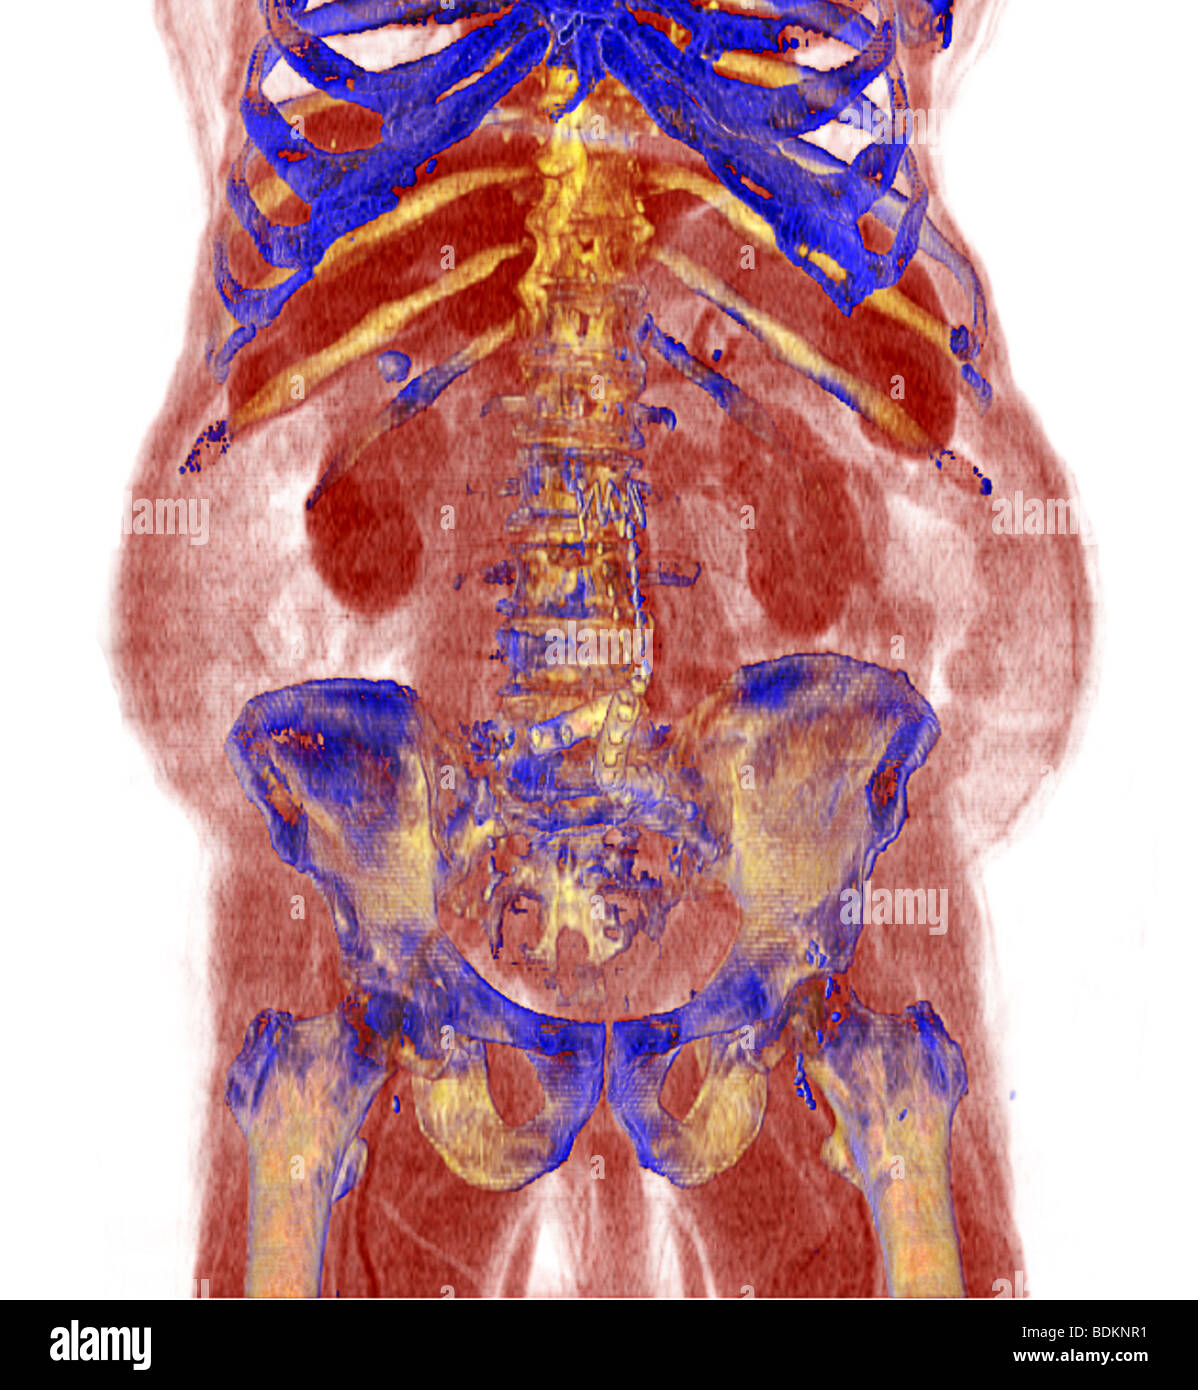 Verbesserte dreidimensionale CT-Scan eines 80 Jahre alten übergewichtige Menschen Farbe. Stockfoto